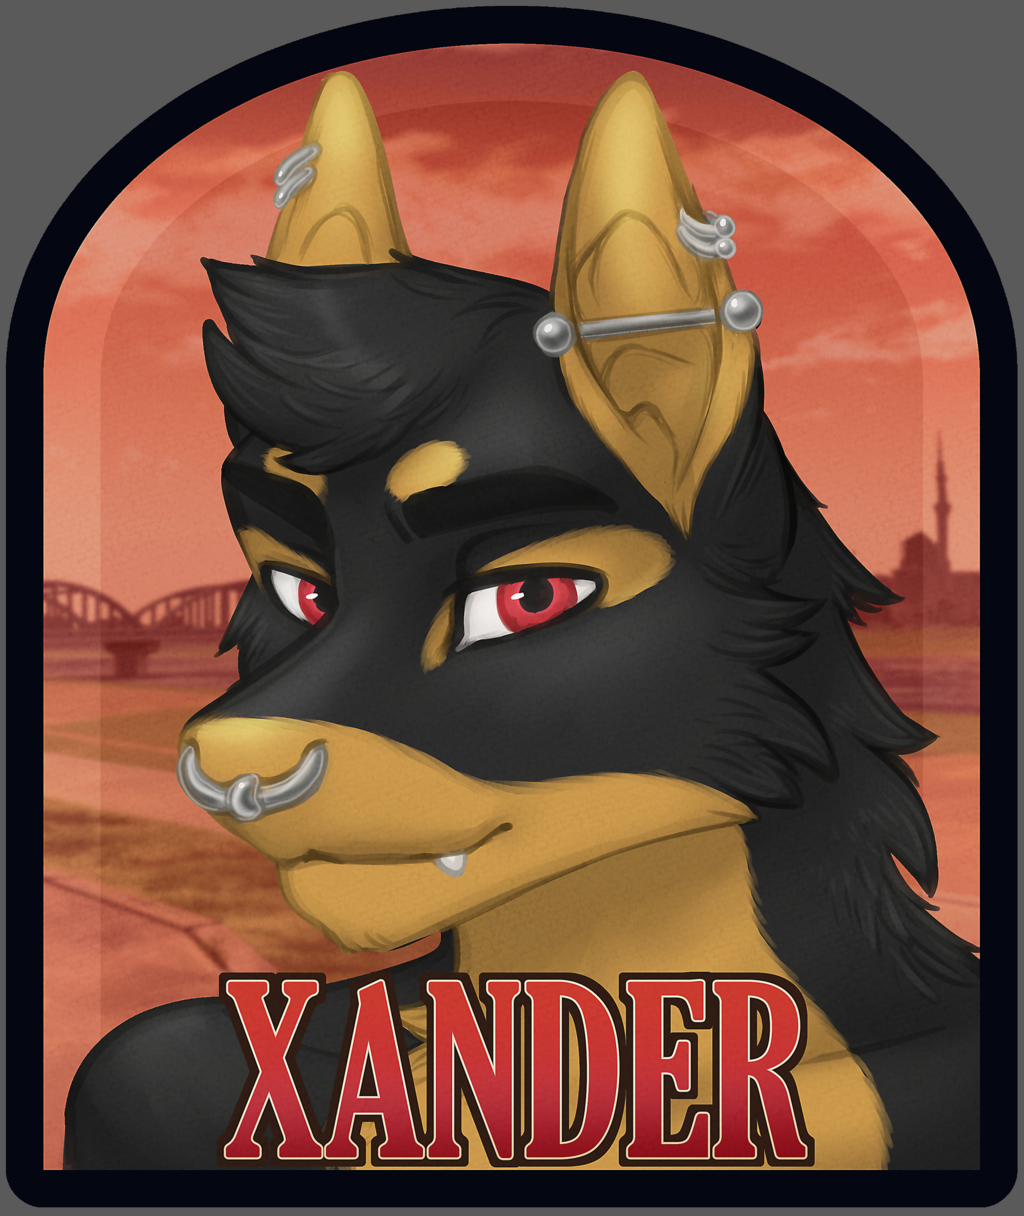 Xander badge